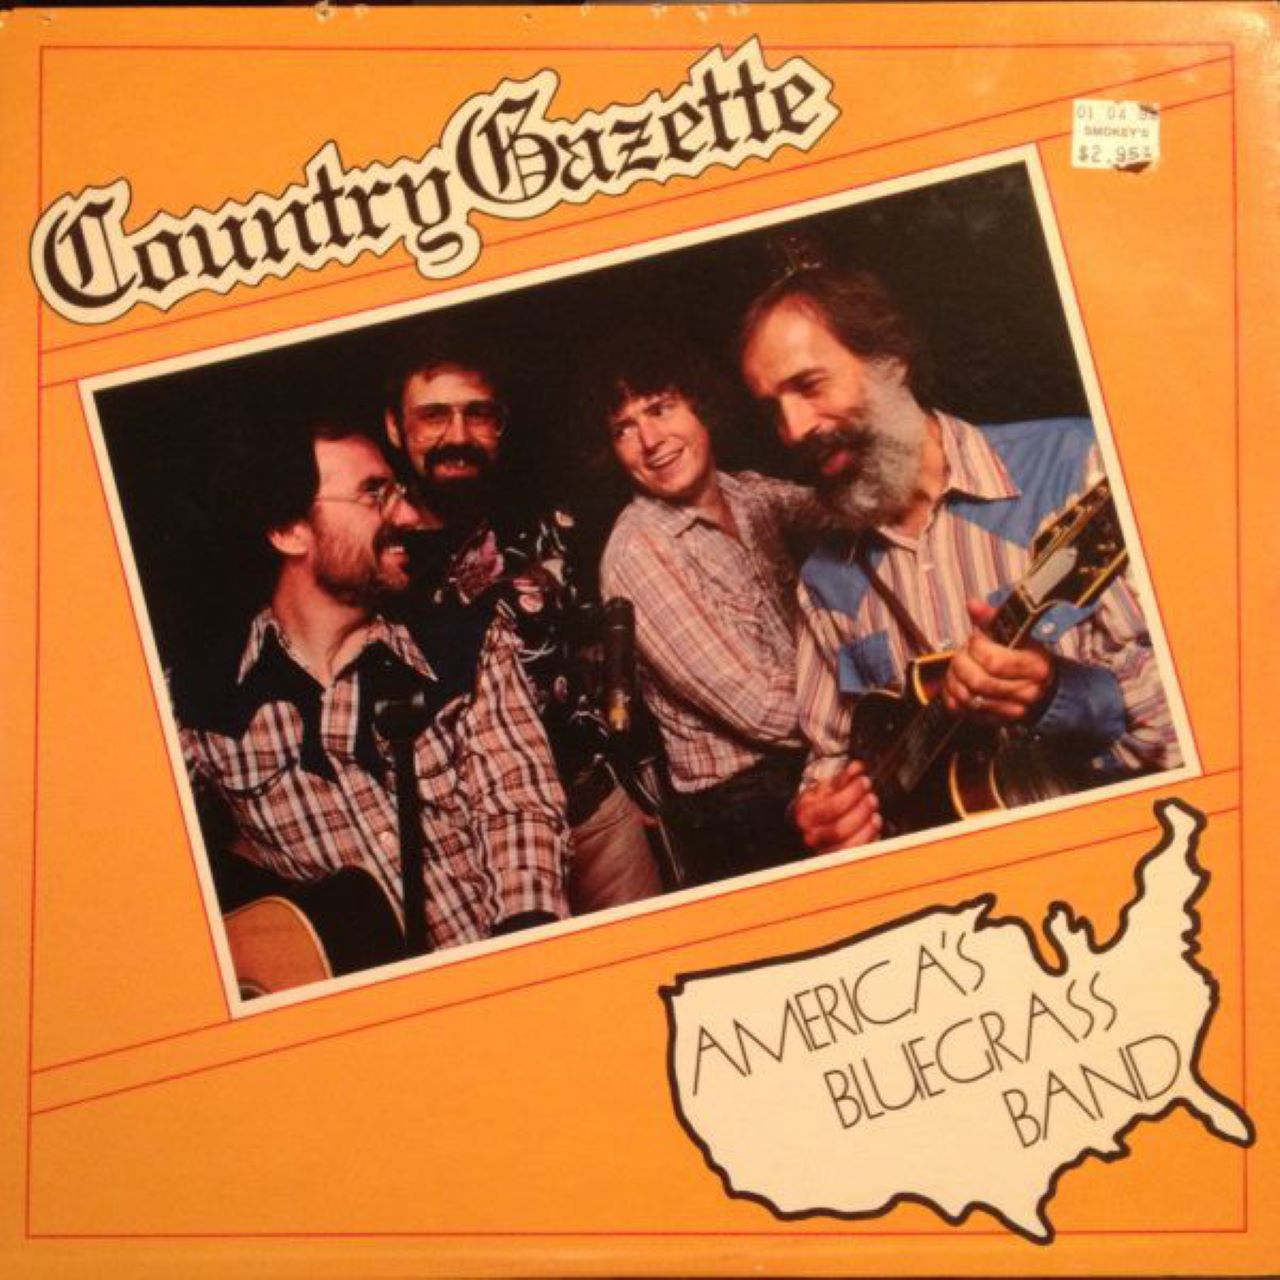 Country Gazette - America's Bluegrass Band cover album